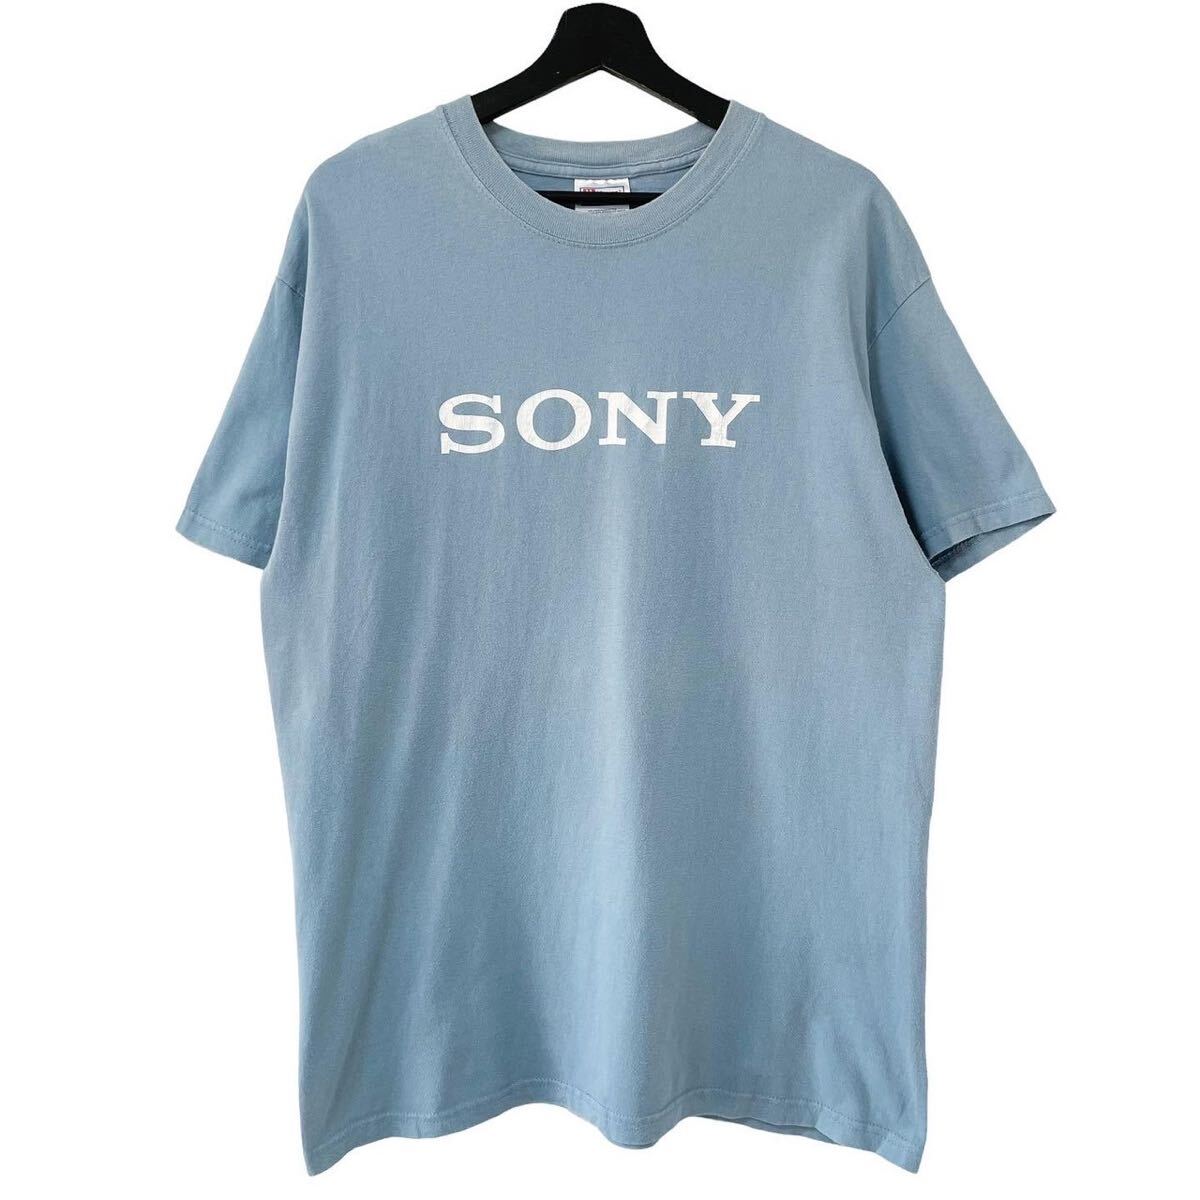 ■激レア■90s SONY ロゴ 企業 Tシャツ L XL相当 ソニー 水色 ビンテージ